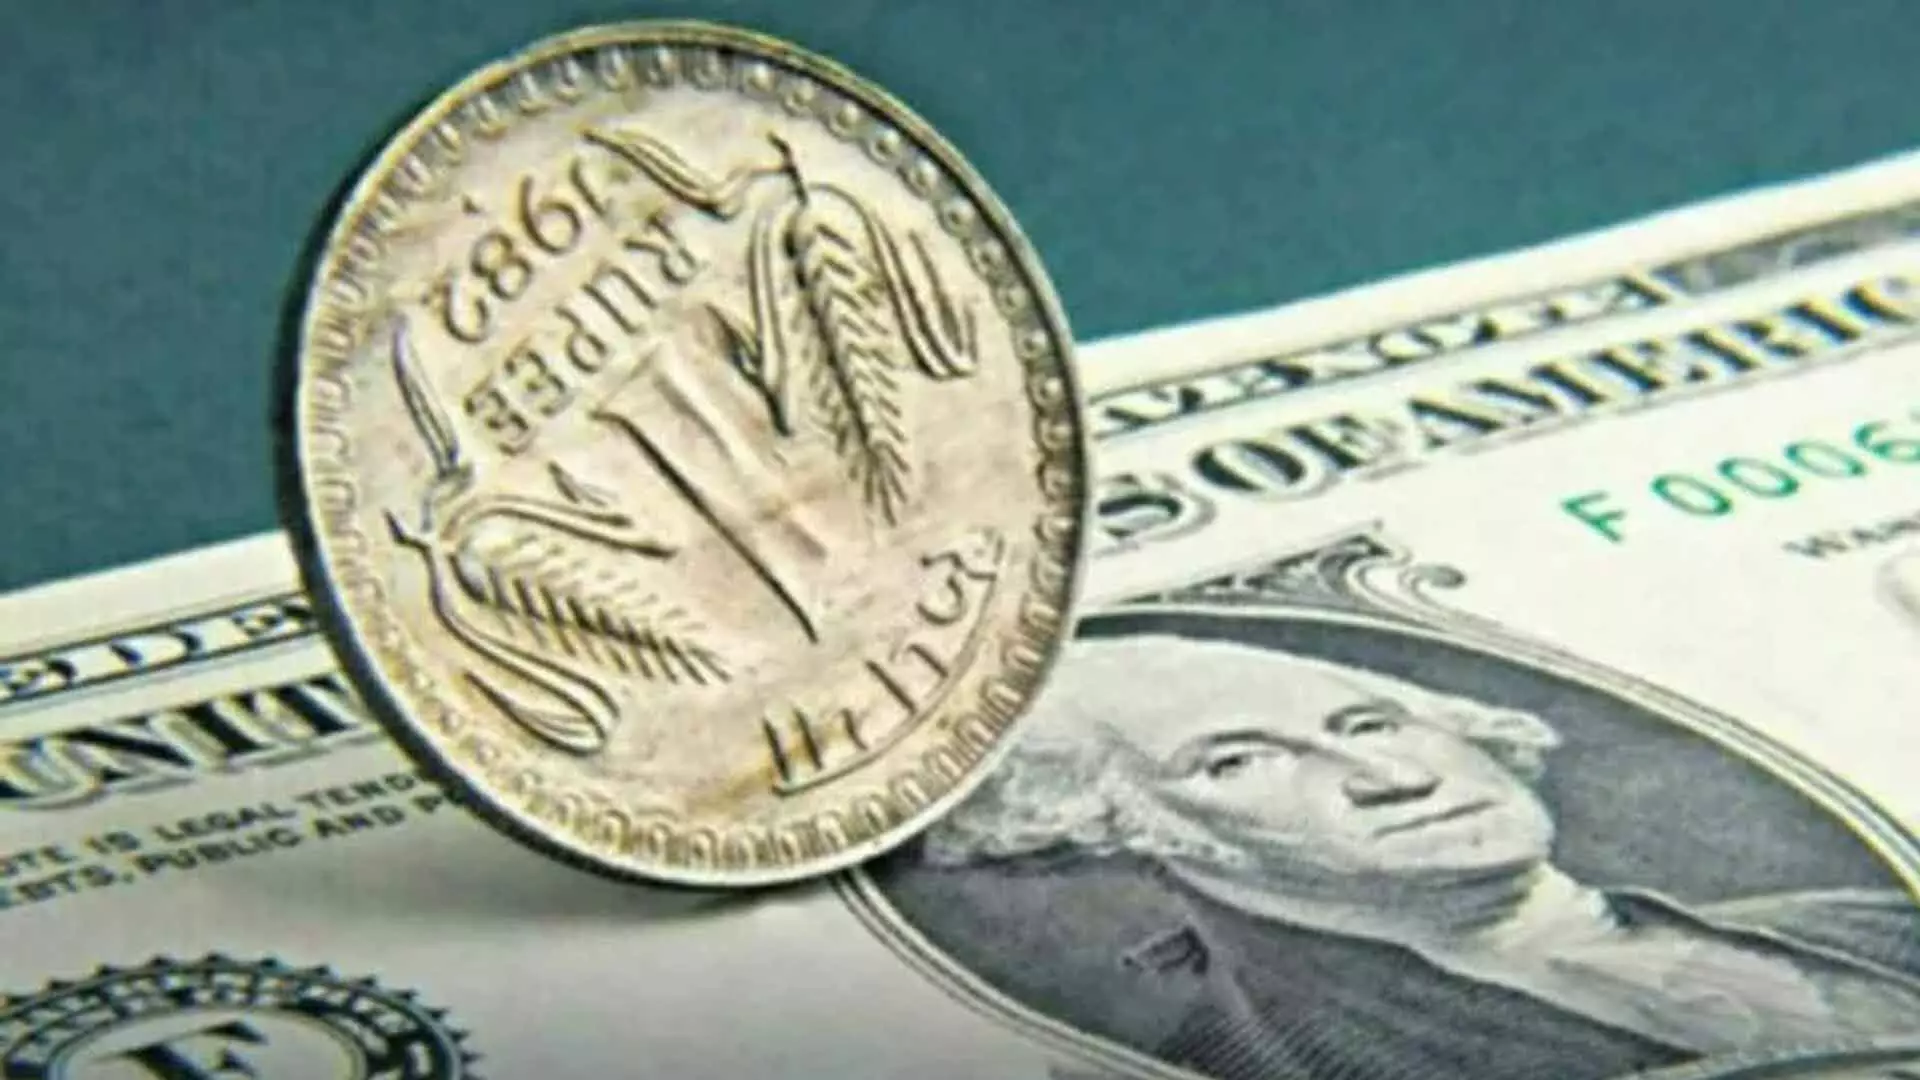 Early trade: डॉलर के मुकाबले रुपया 83.72 के सर्वकालिक निचले स्तर पर पहुंचा